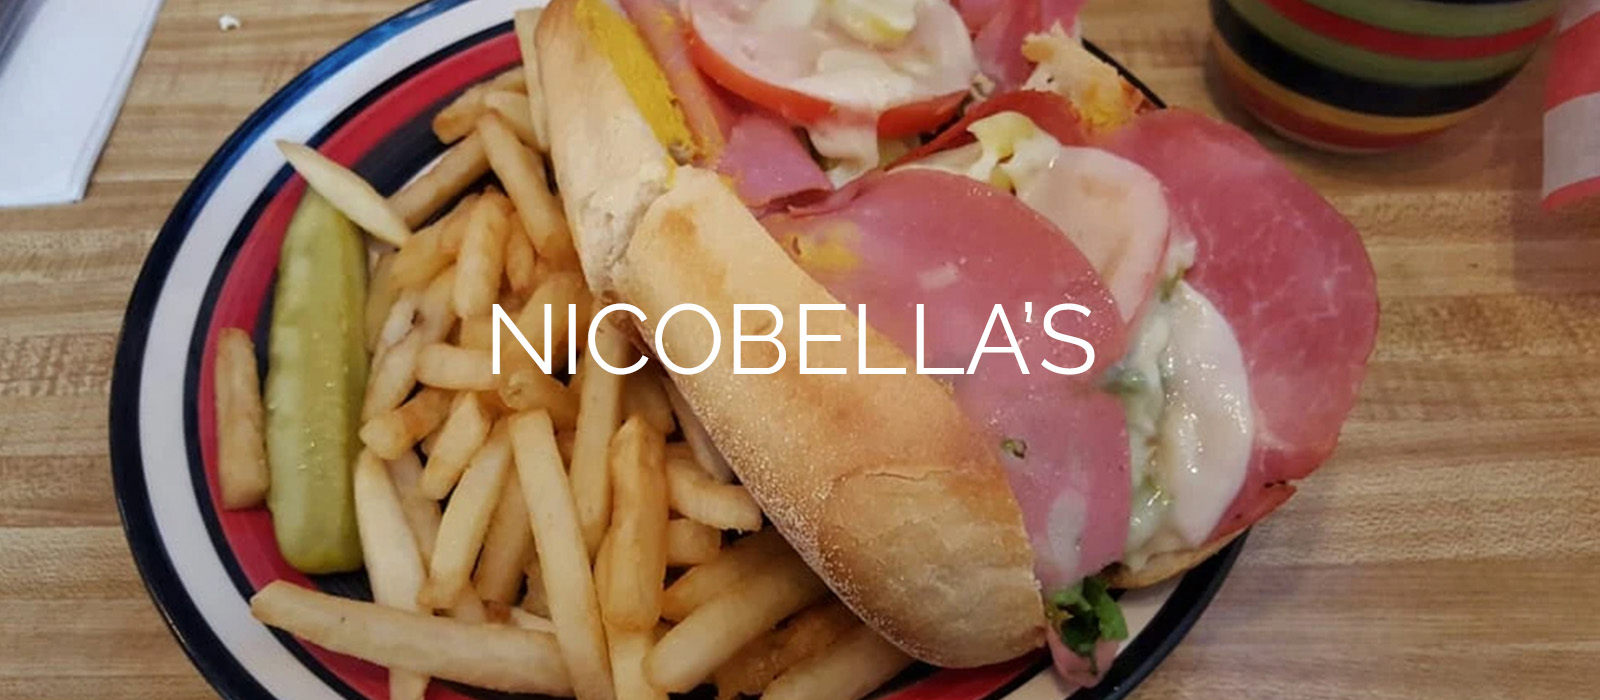 Nicobella's